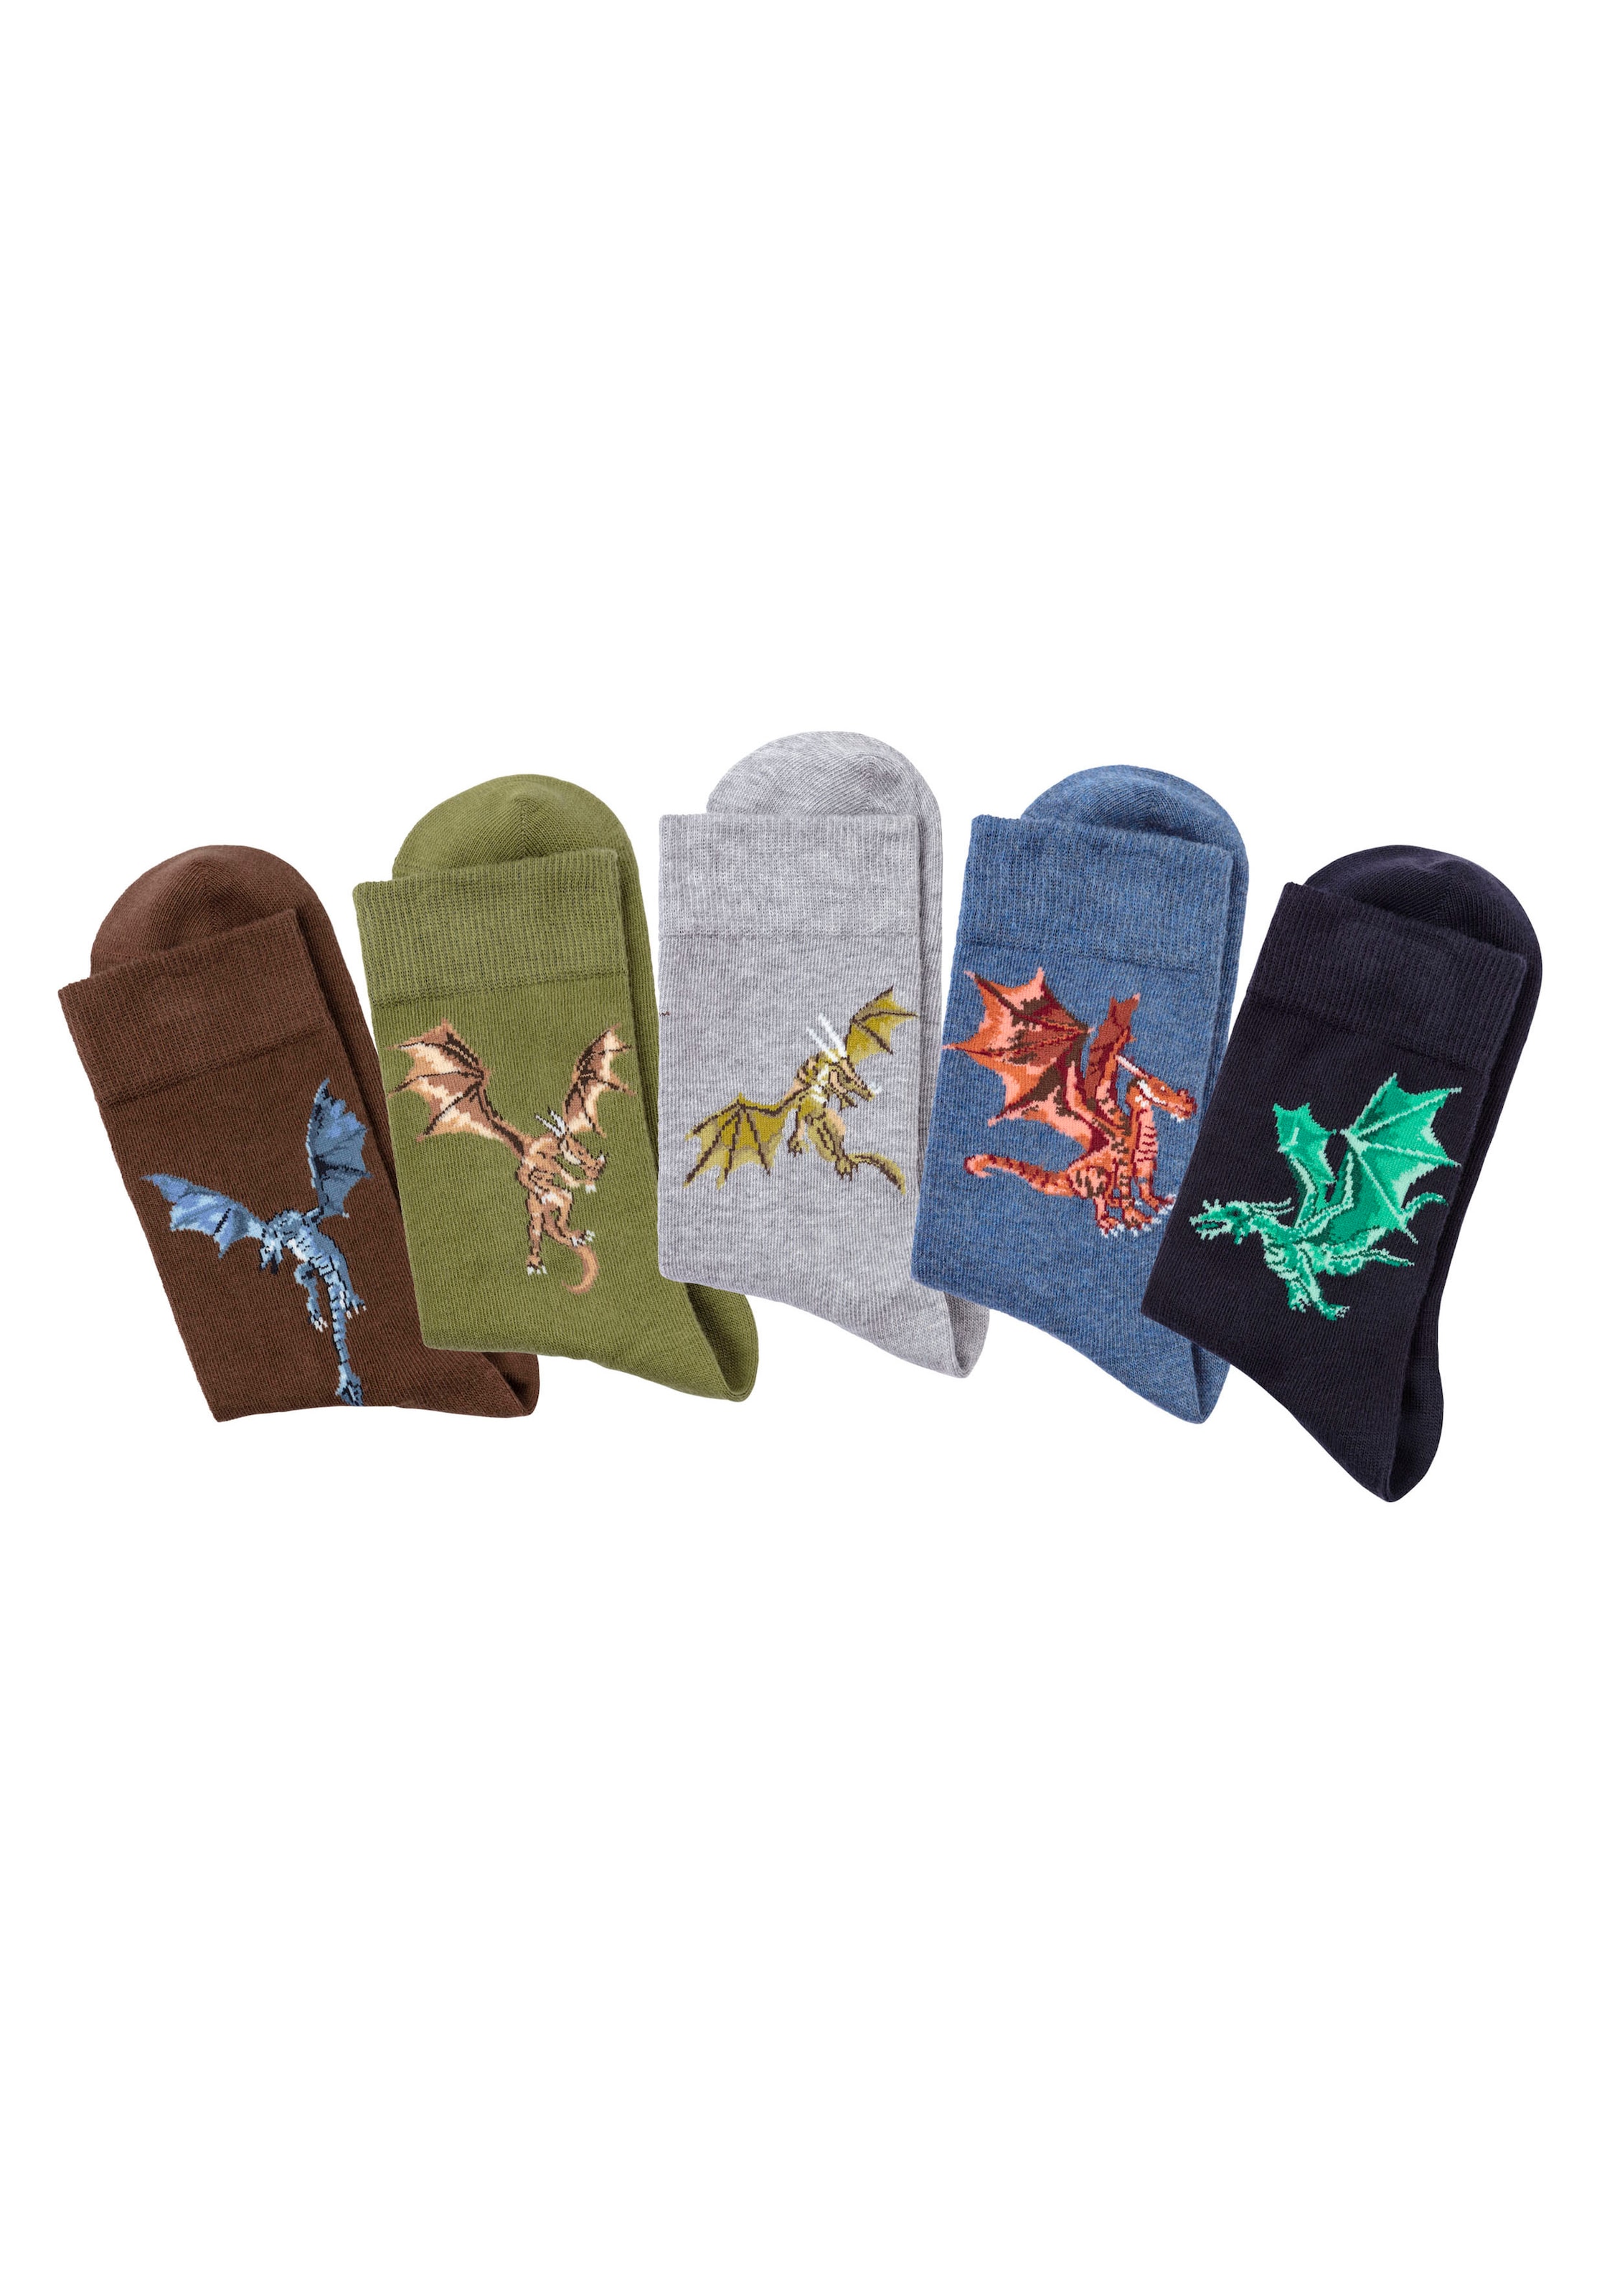 Socken, (5 Paar), mit unterschiedlichen Drachen Motiven